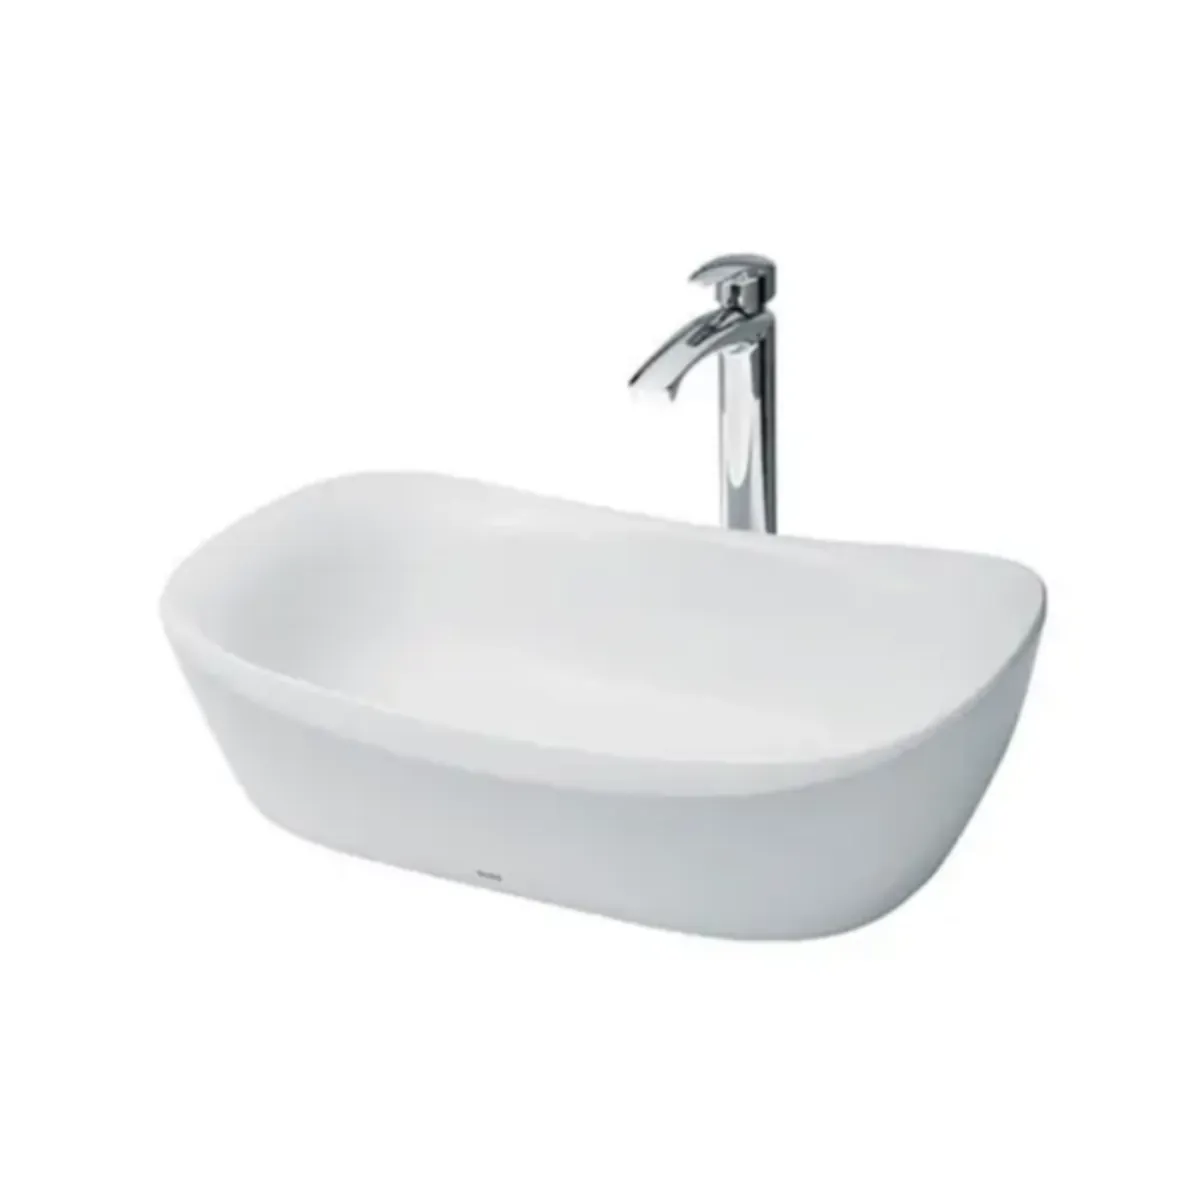 Thiết kế hiện đại và đẳng cấp với chậu rửa lavabo âm bàn PLD-668B. Một nét đẹp tinh tế cho không gian phòng tắm của bạn.